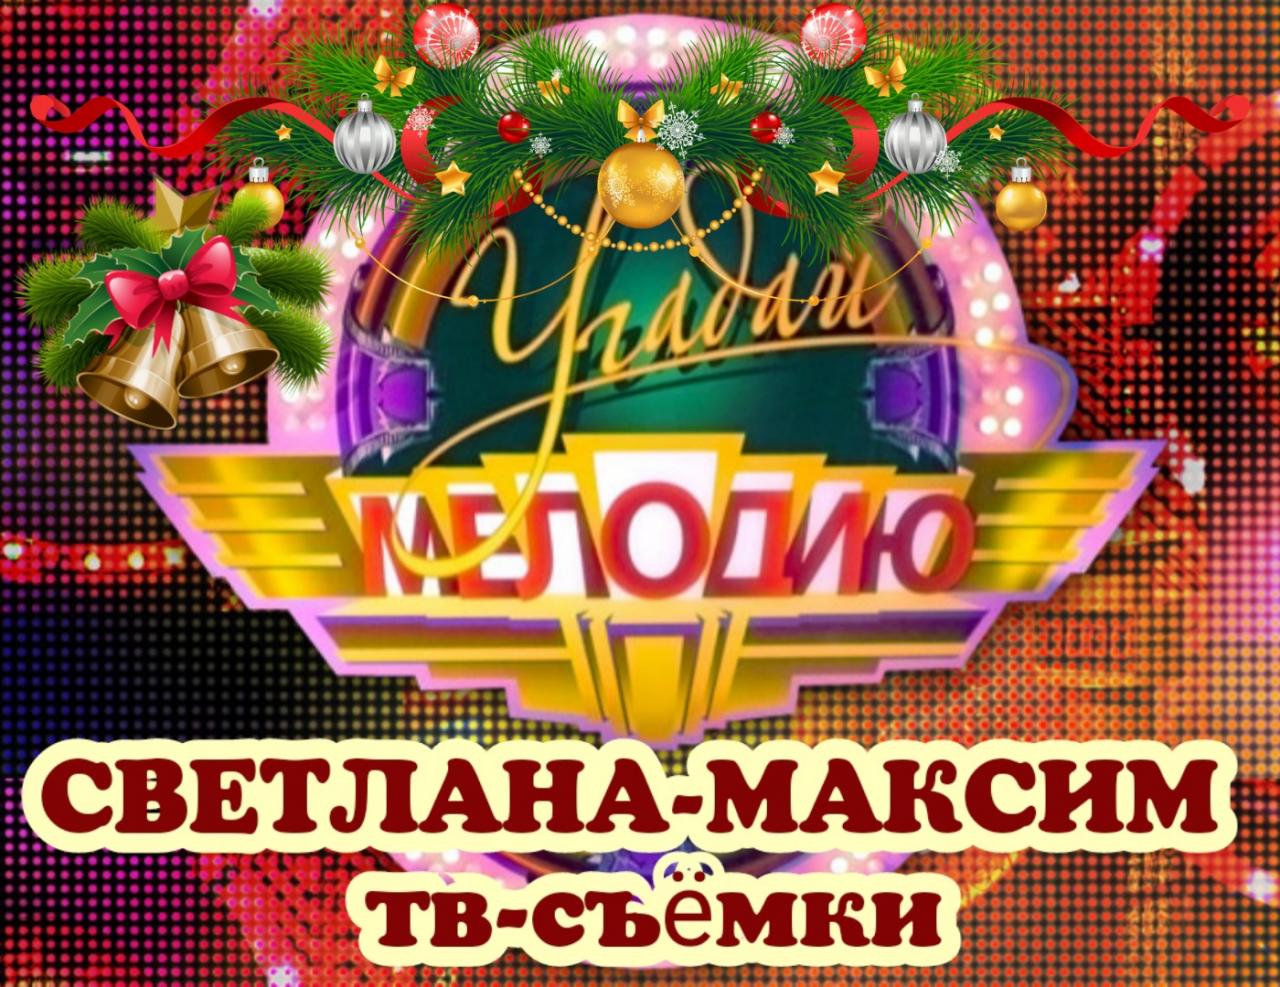 23 декабря музыкальное шоу "УГАДАЙ МЕЛОДИЮ".